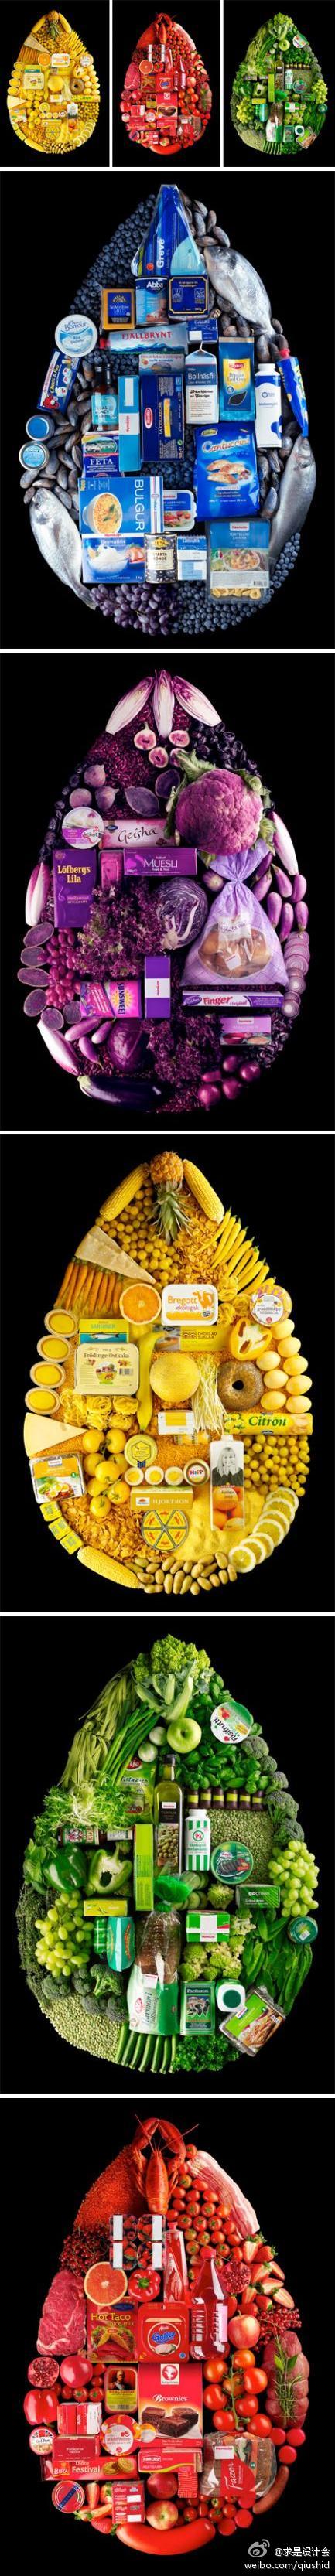 食物的色彩，来自Linda Lundgren的食物造型设计，为Hemköp的超市制作的系列广告。